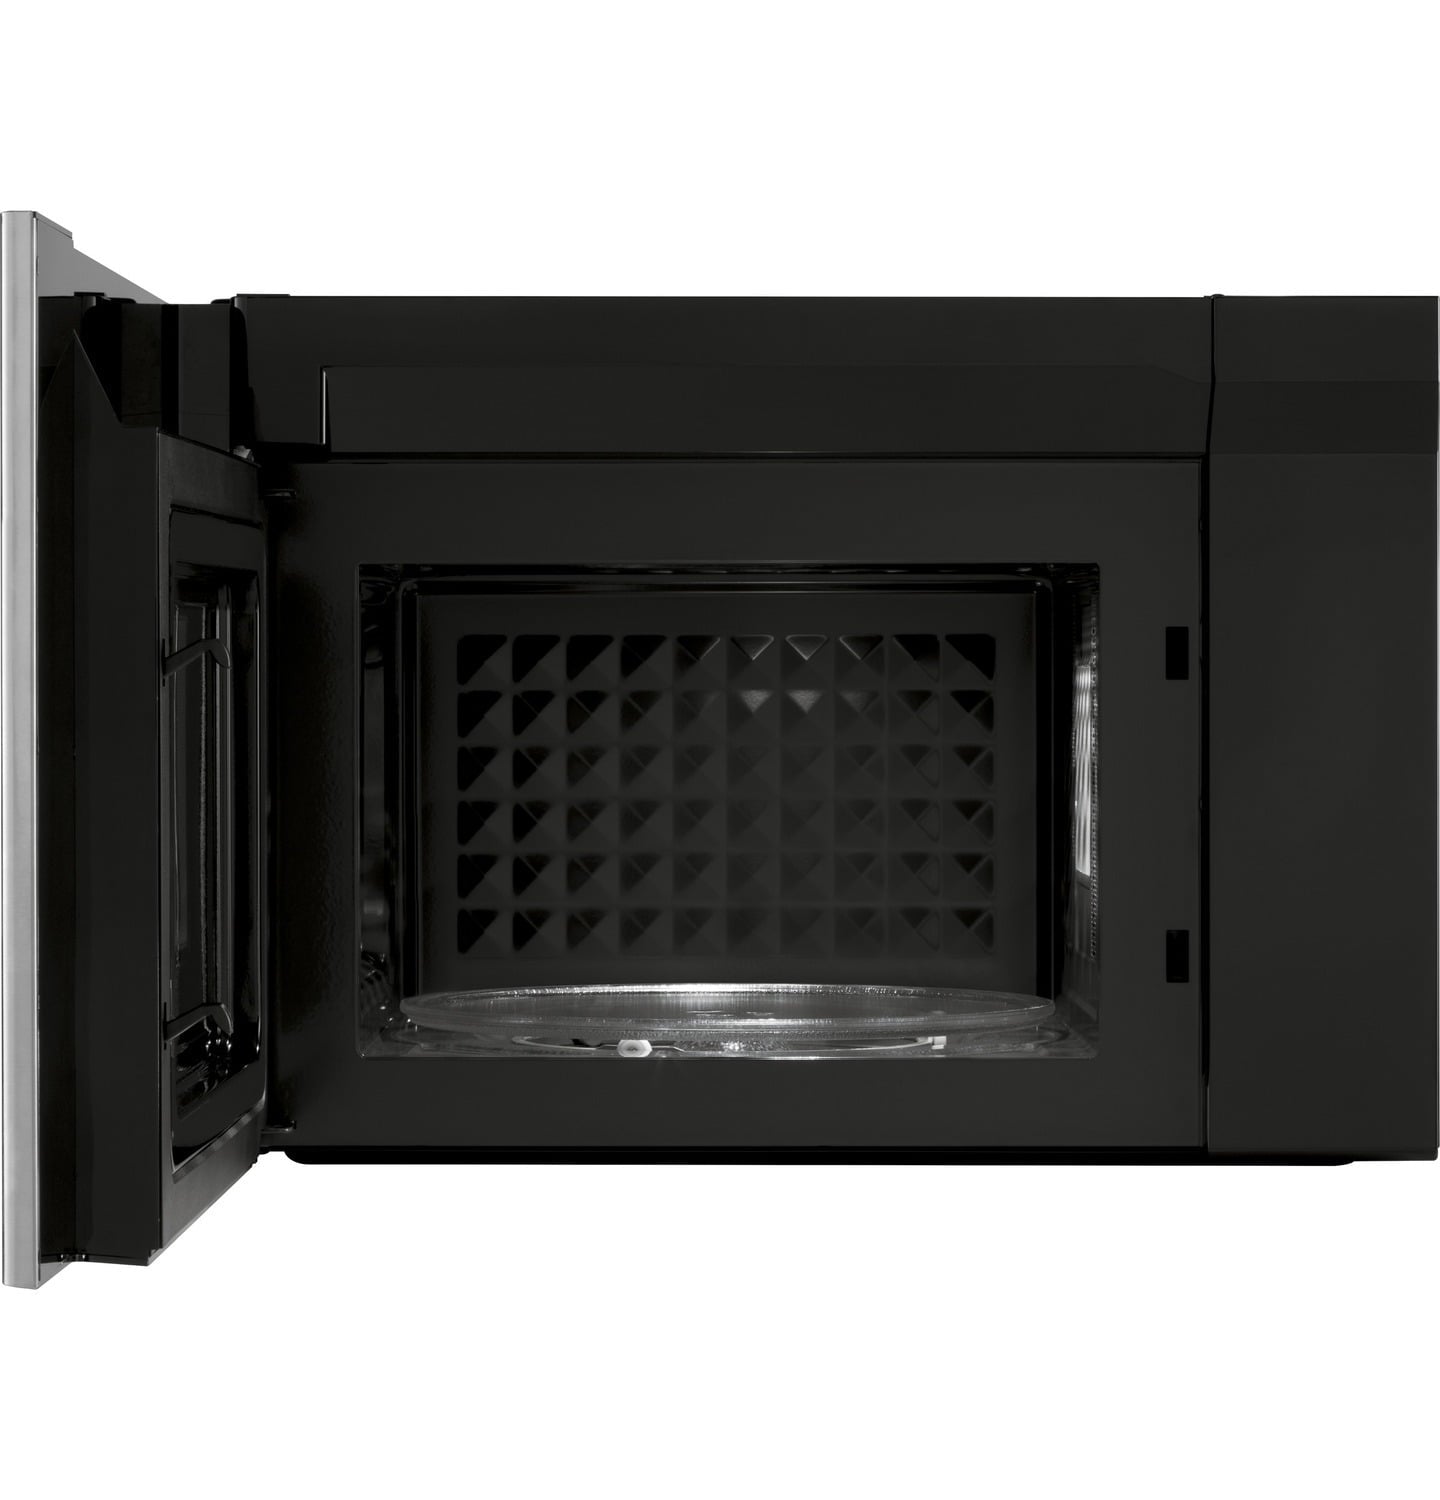 Haier HMV1472BHS 24" 1.4 Cu. Ft. Over-The-Range Microwave Oven